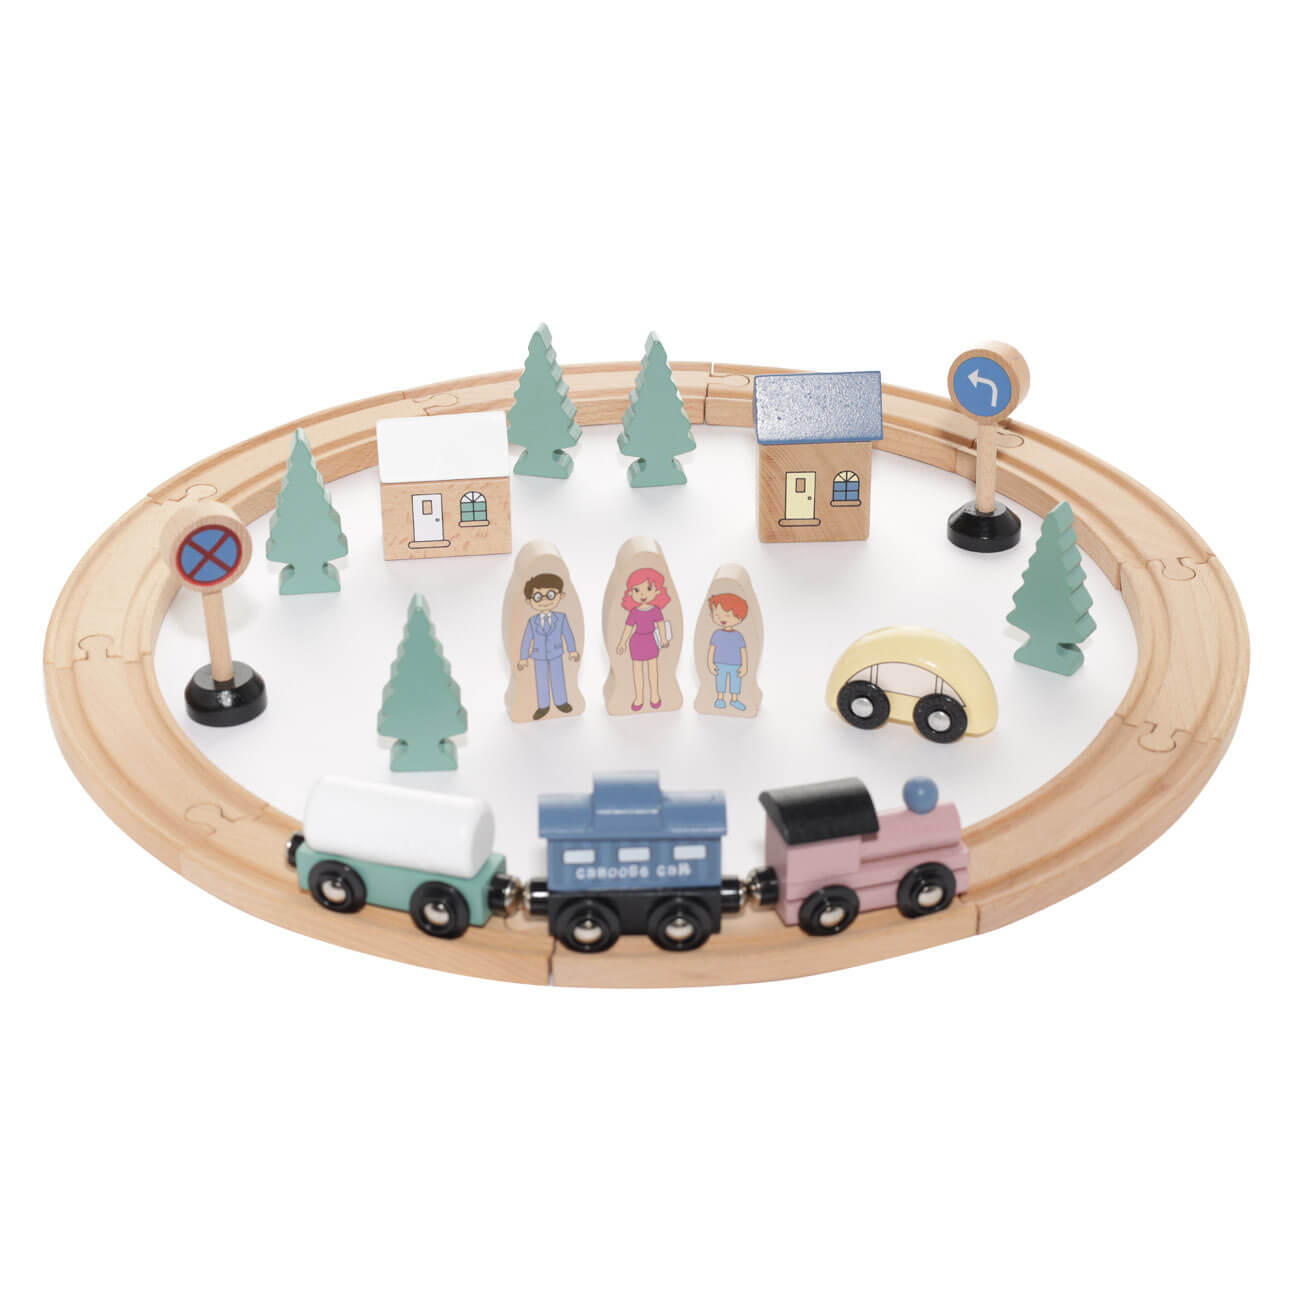 Железная дорога игрушечная, 28 см, дерево, Город, Game железная дорога игрушечная 28 см дерево город game